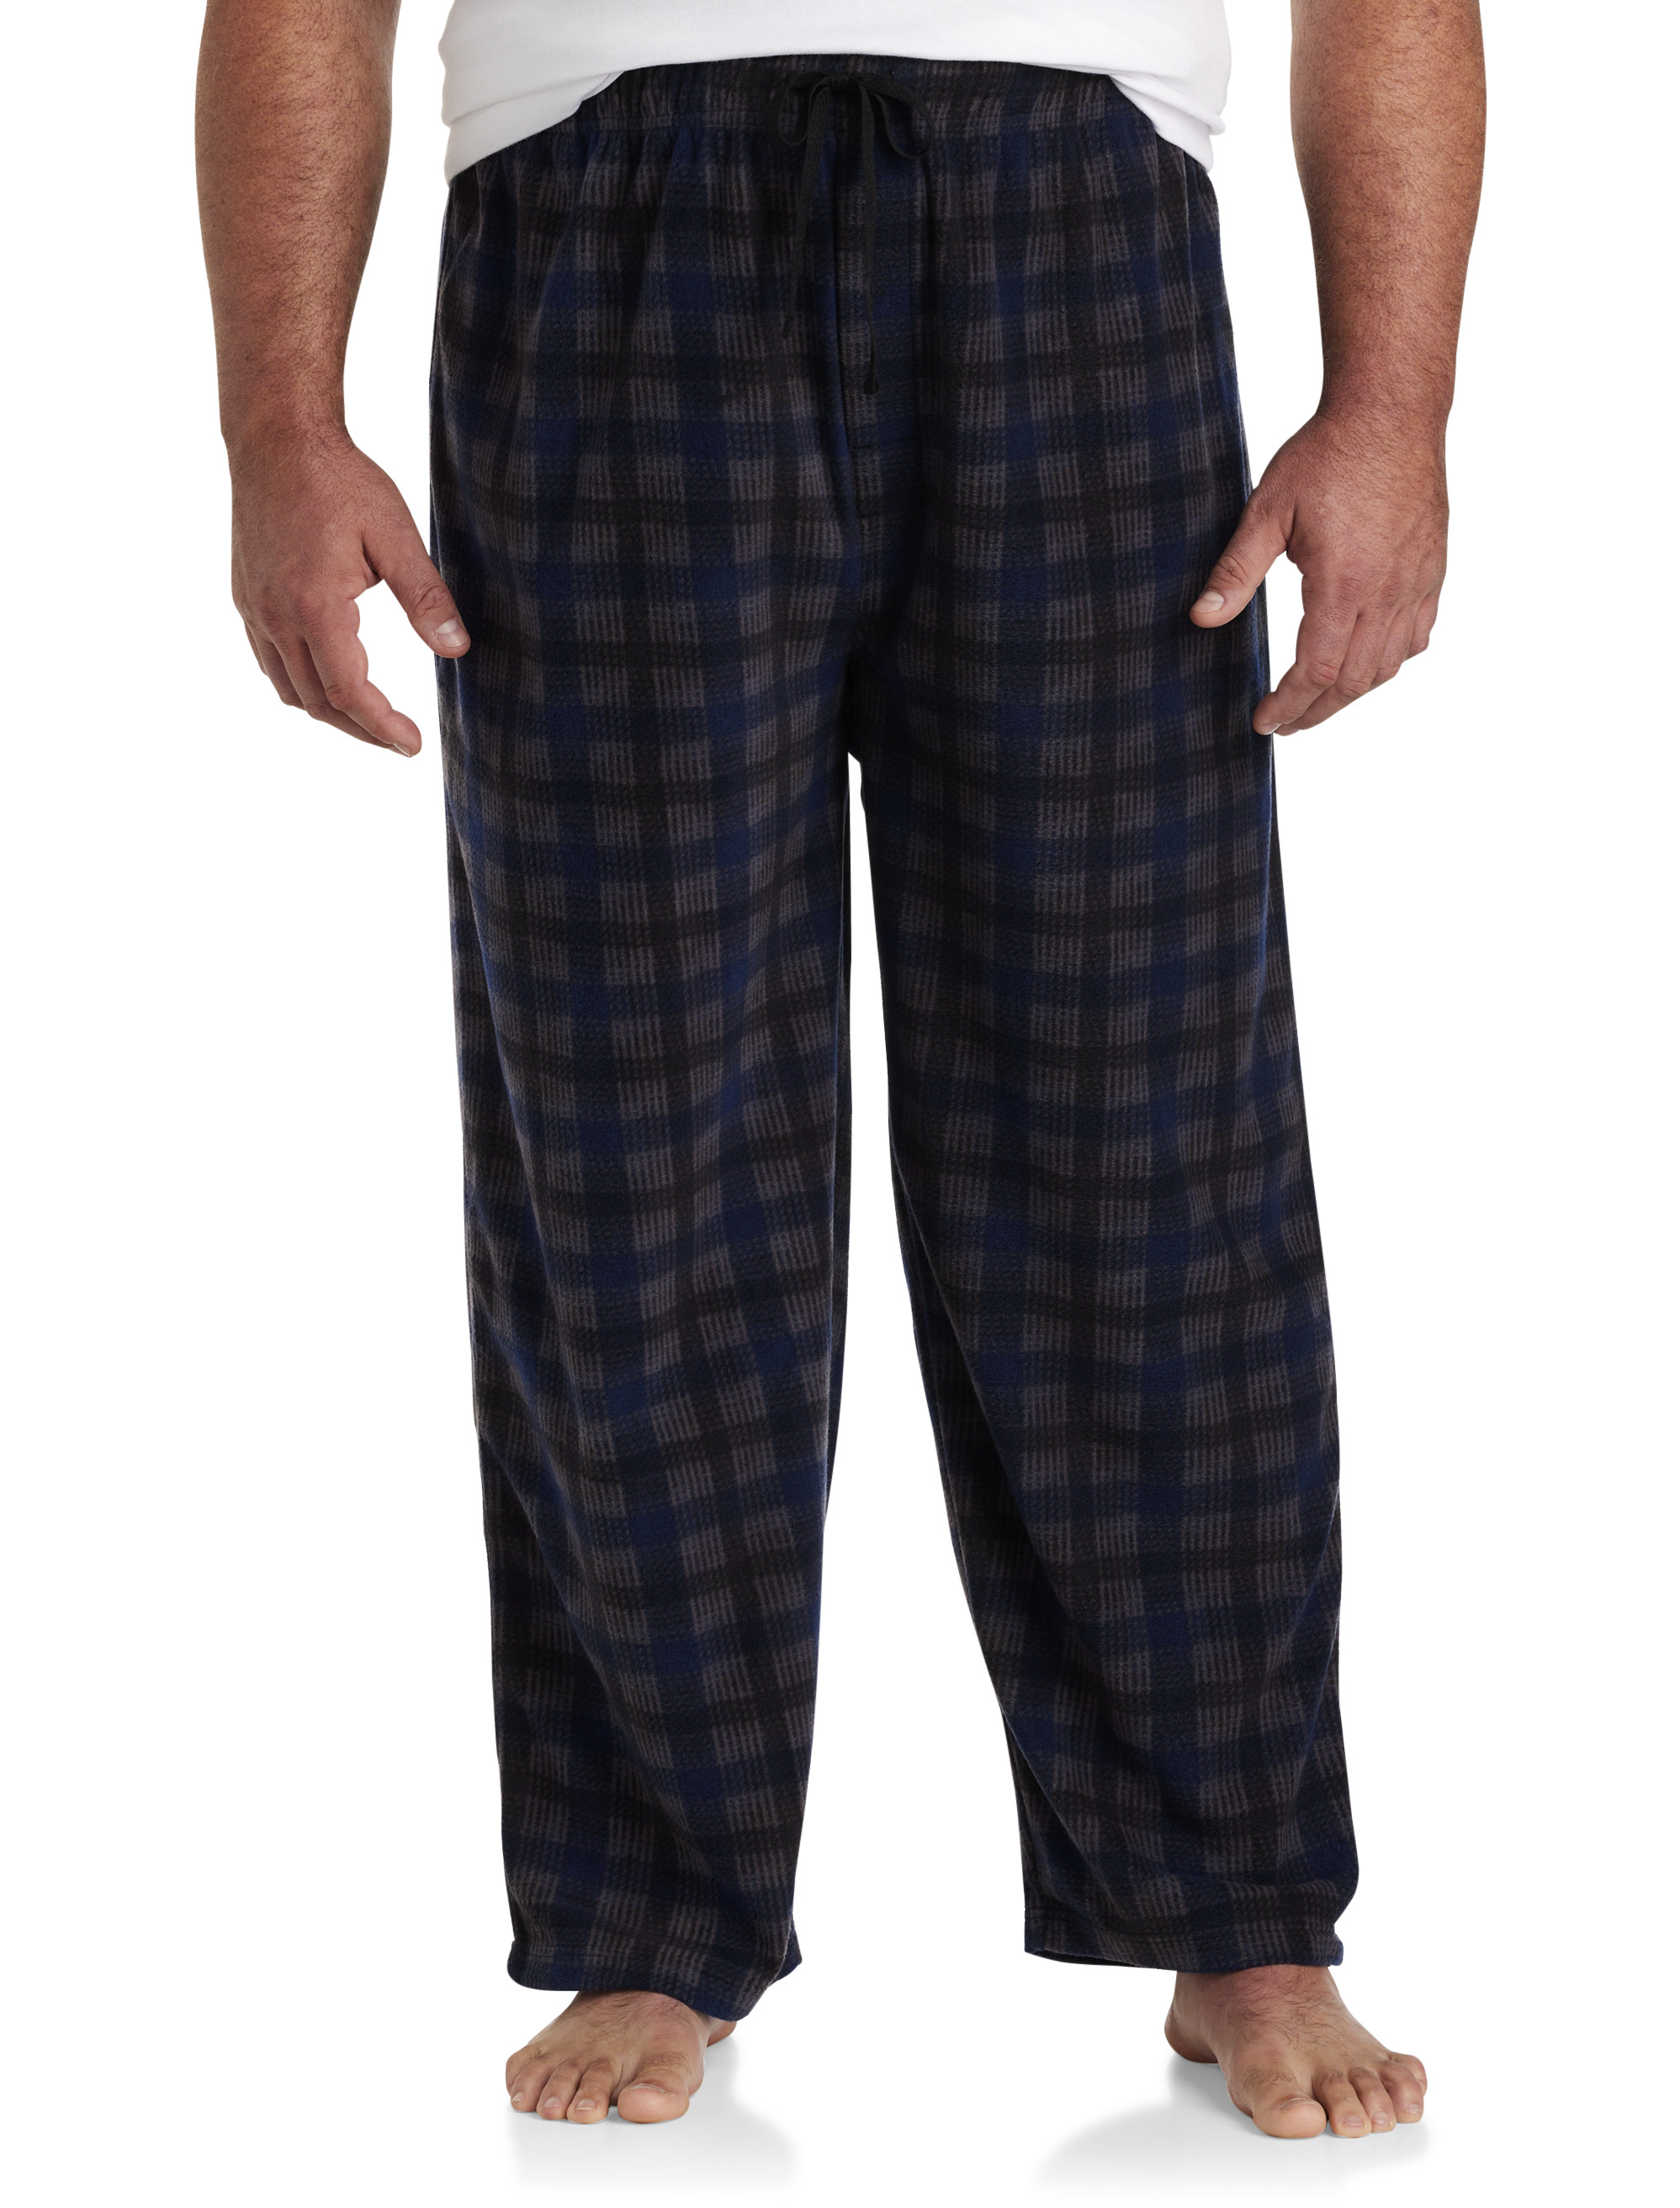 U.S. Polo Assn. Men's Microfleece Lounge Pajama Pants, Sizes S-3XL 